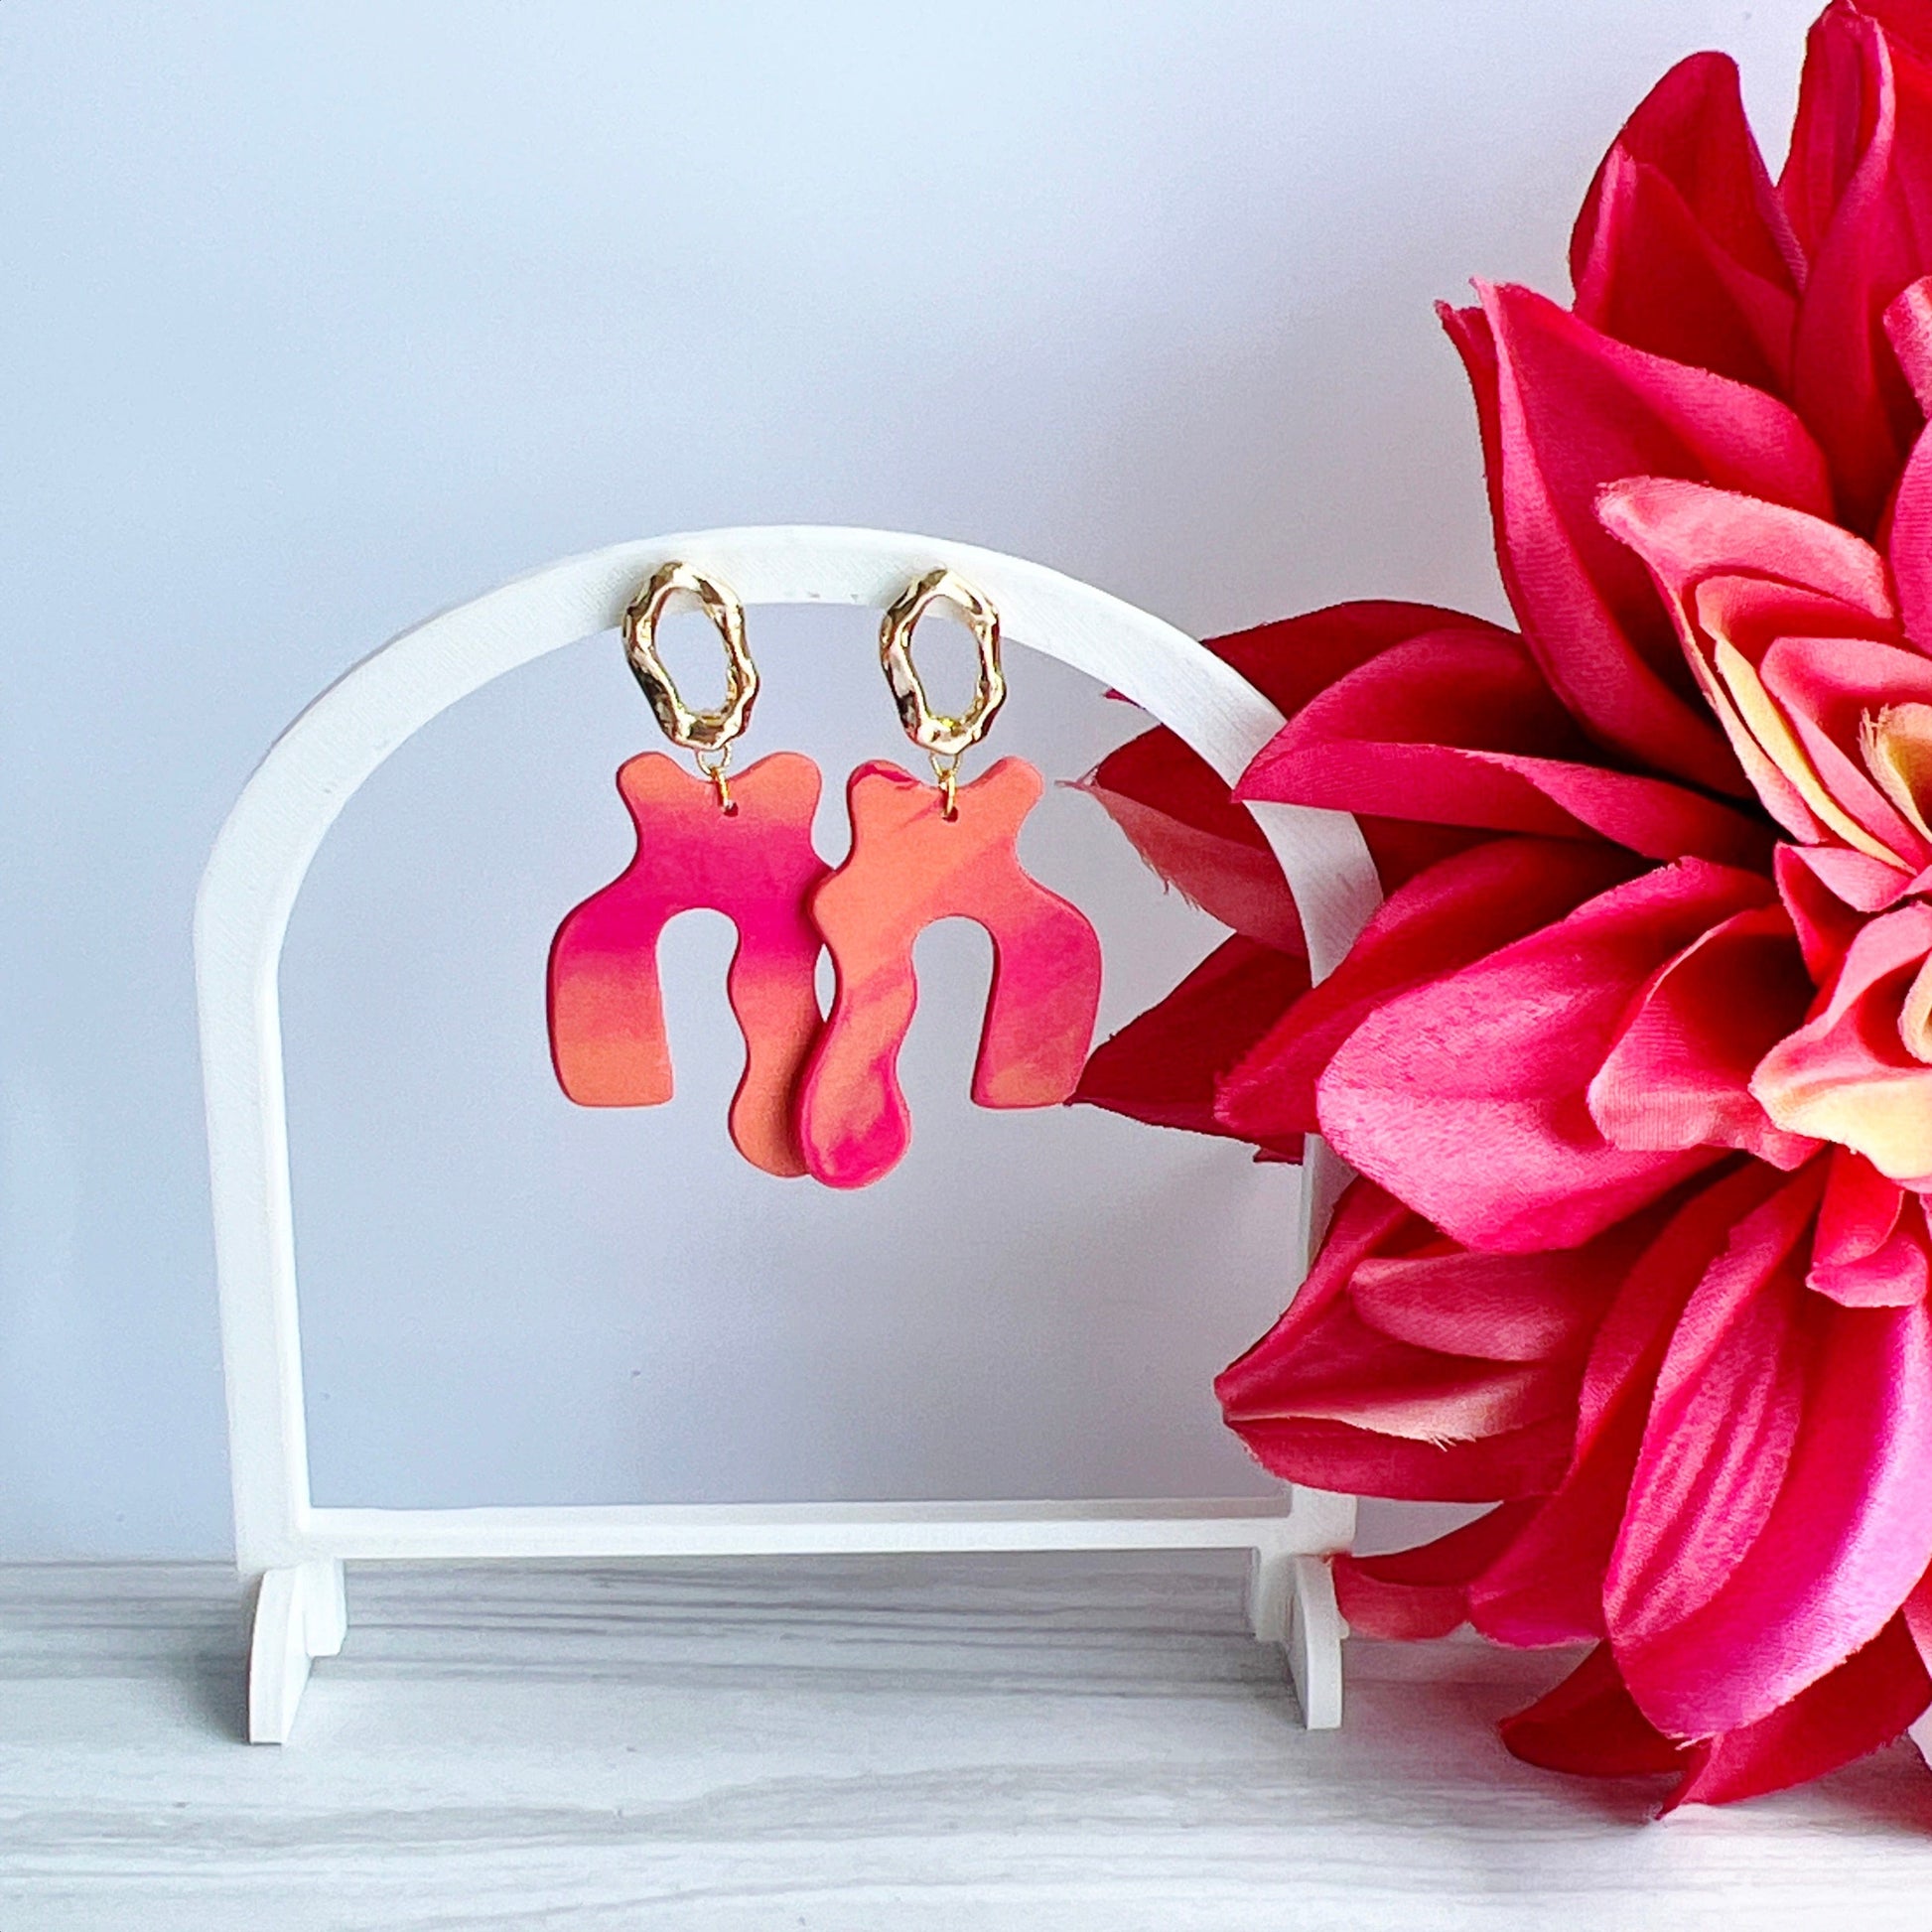 Earrings Soleil - Orange & Pink Squiggle Earrings